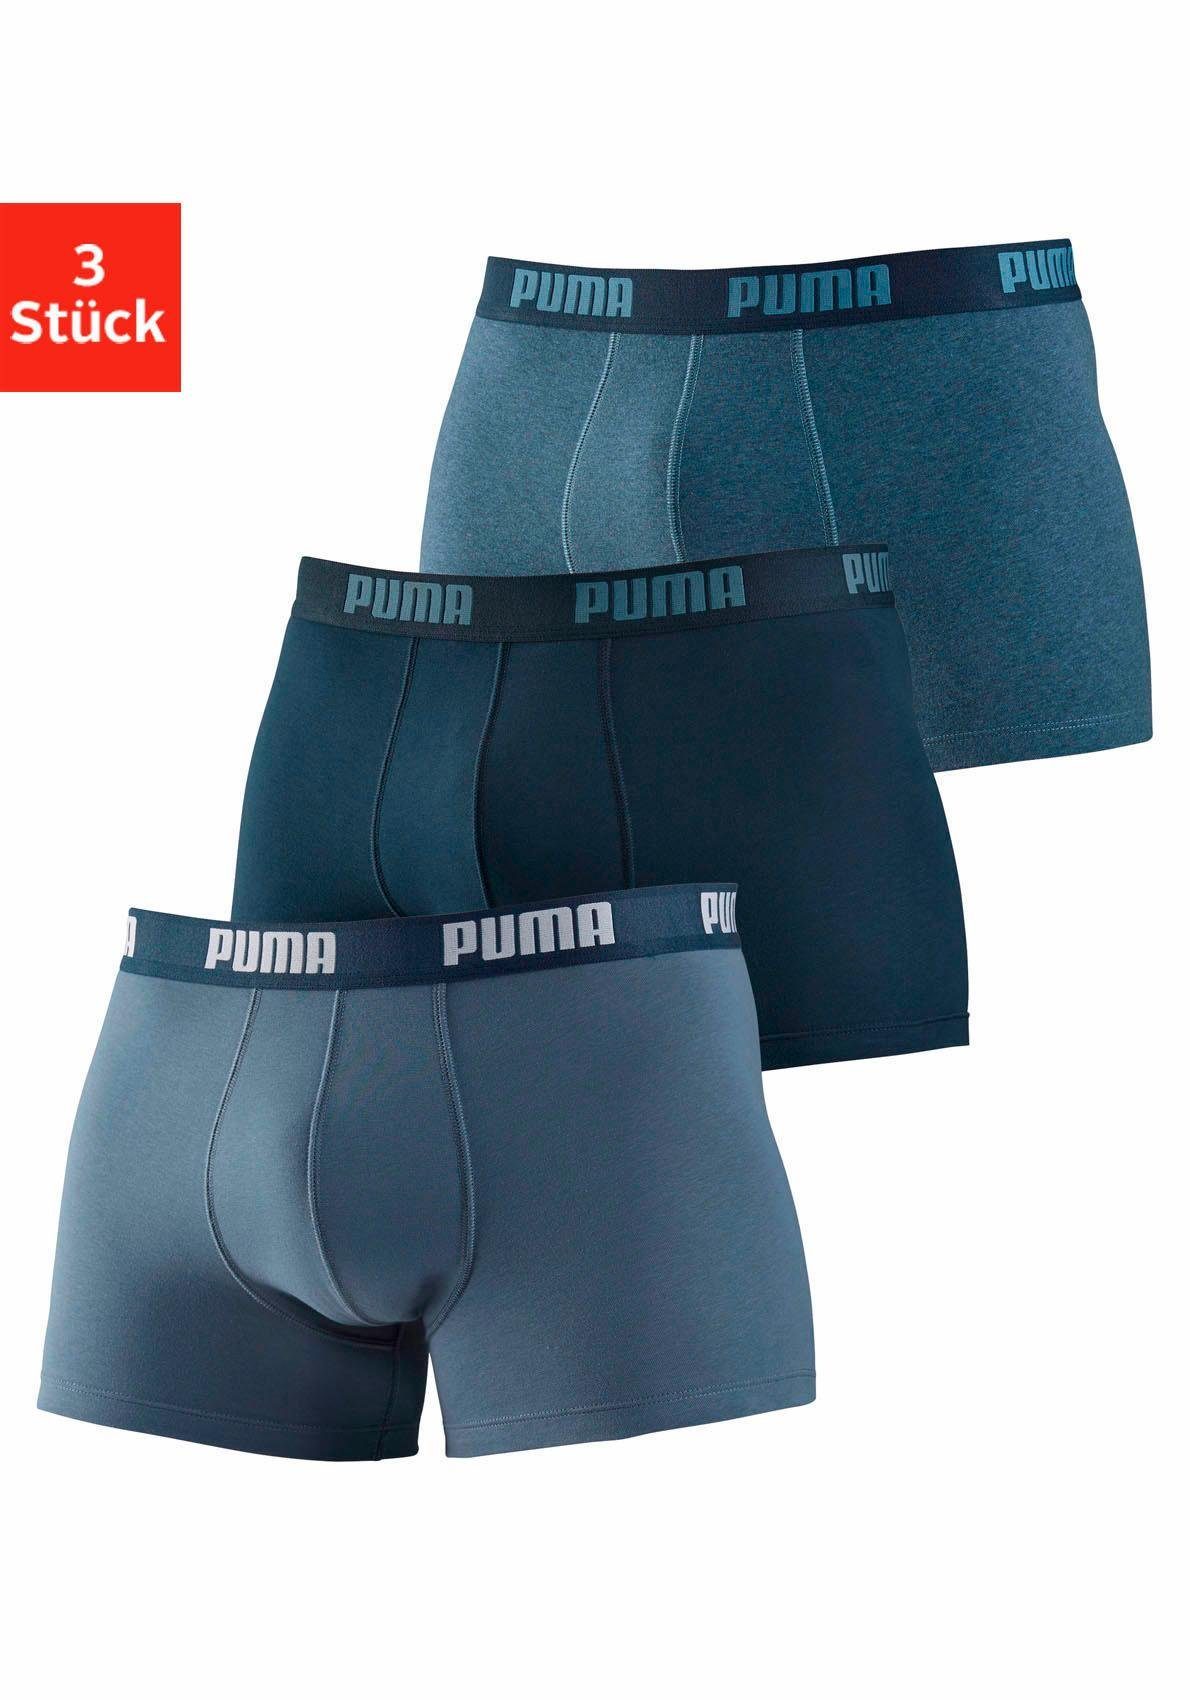 PUMA Boxer (3 Stück) in 3 Blautönen, In normaler Passform online kaufen |  OTTO